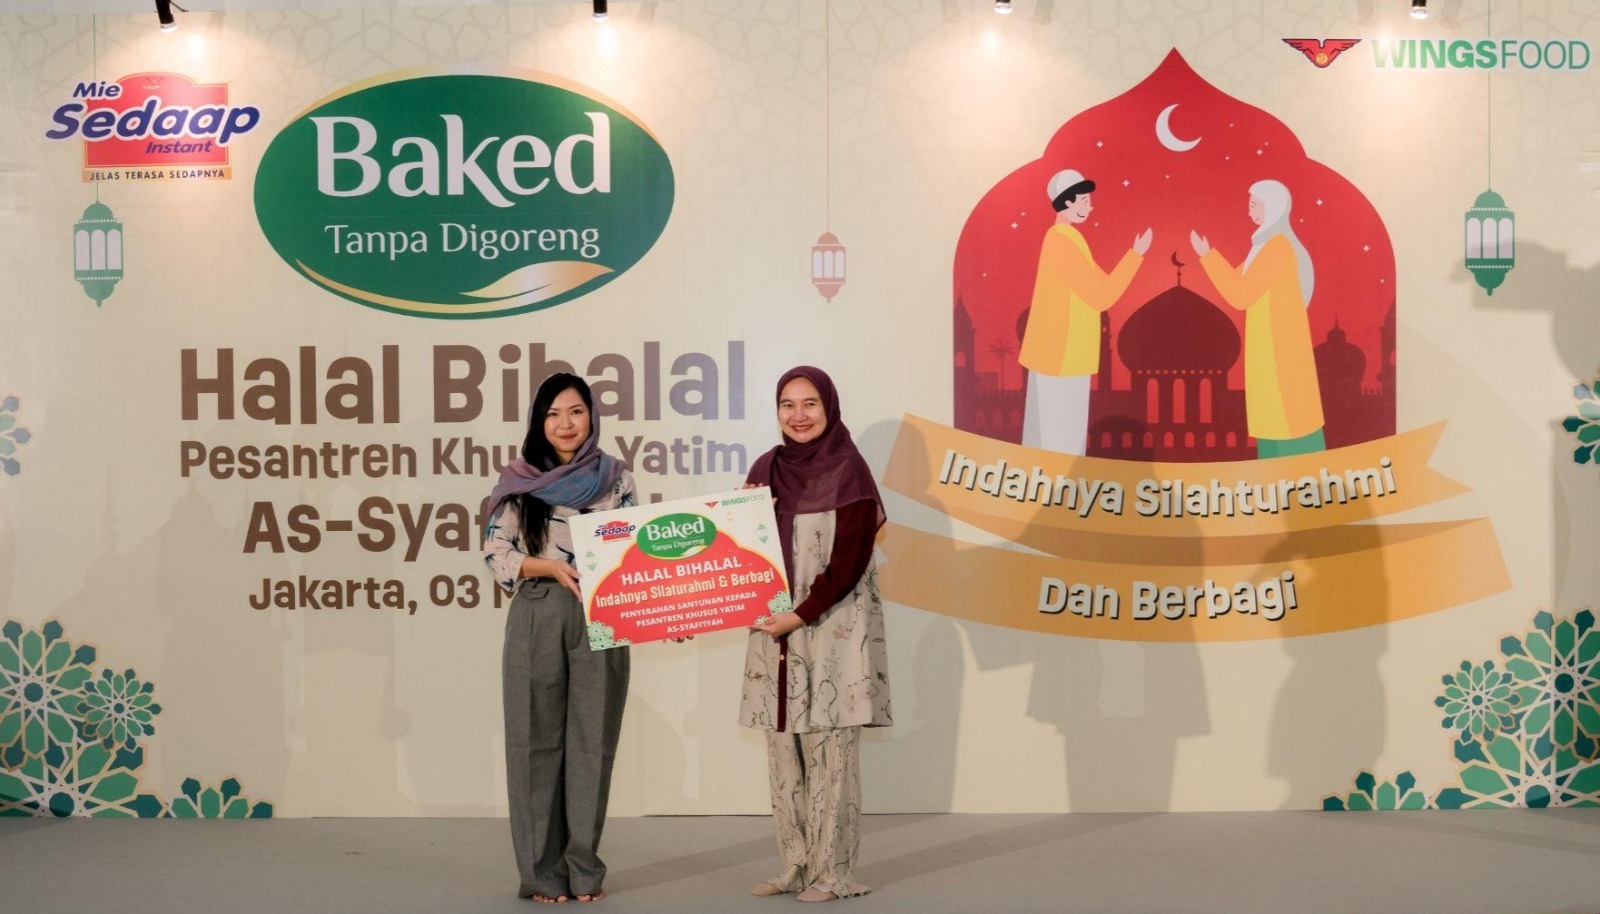 Wings Food Gelar Halal Bihalal bersama Anak Yatim di Pesantren As-Syafi’iyah